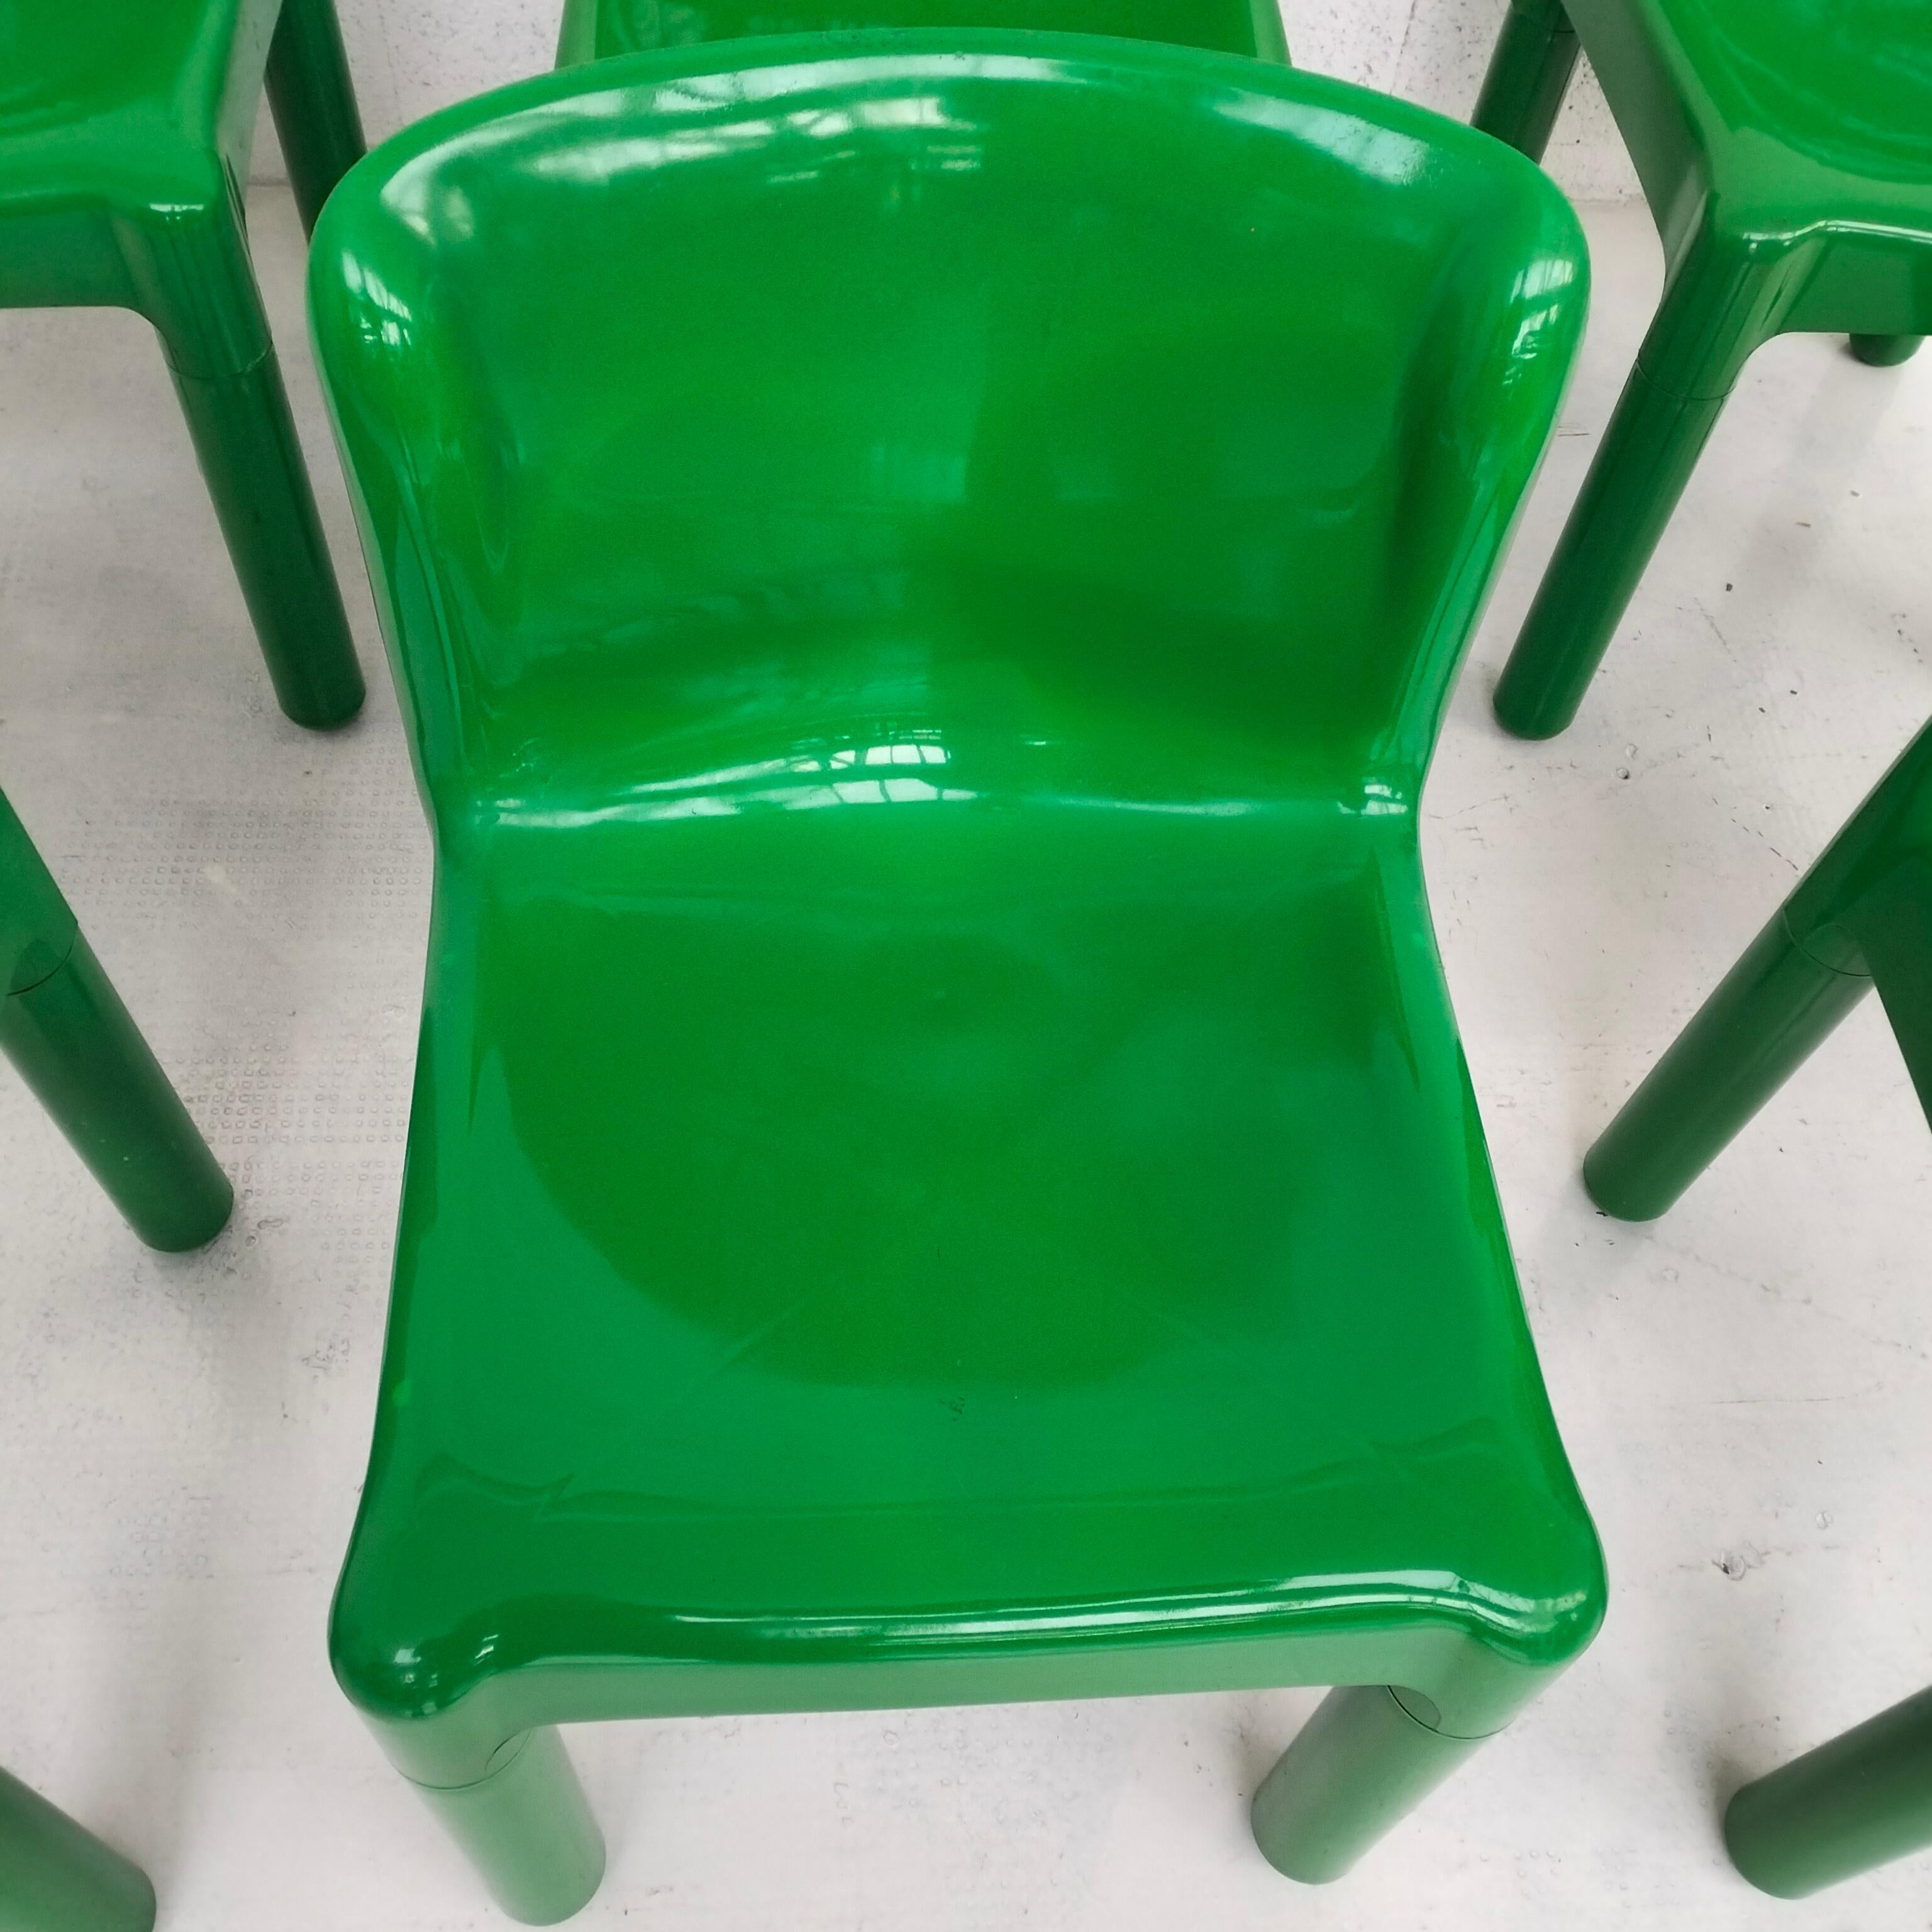 Grüne Kunststoffstühle 4875 von Carlo Bartoli für Kartell 1970er Jahre, 6-teilig (Ende des 20. Jahrhunderts)